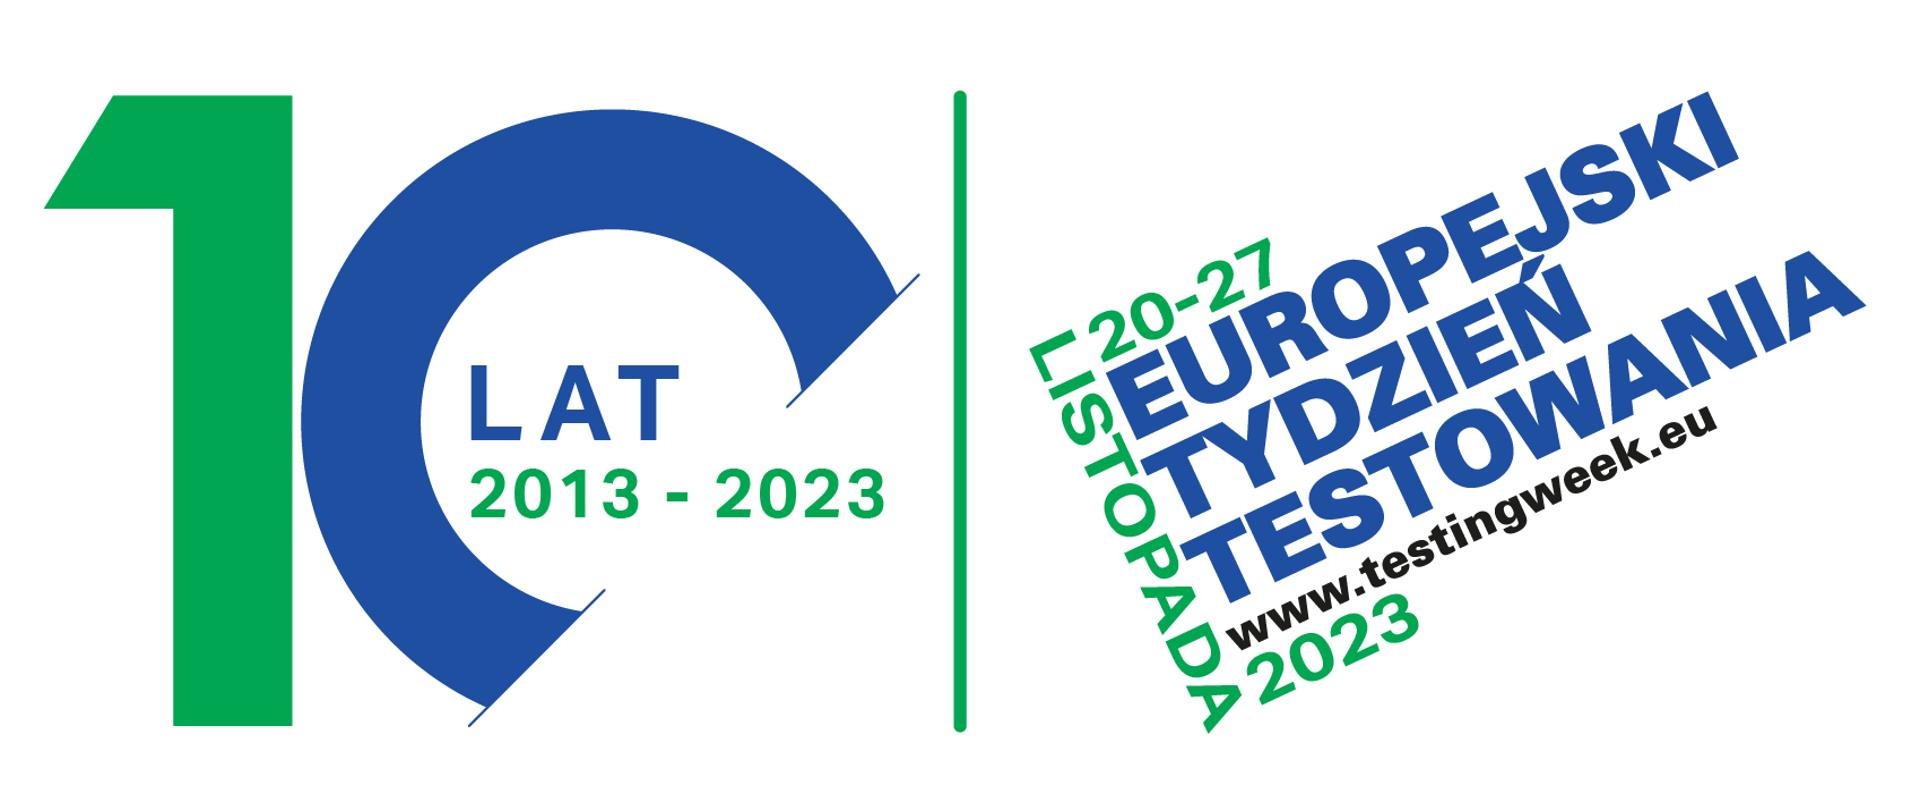 napis zielono niebieski 10 lat 2013-2023 obok napis 20-27 listopada 2023 Europejski Tydzień Testowania, www.testingweek.eu
